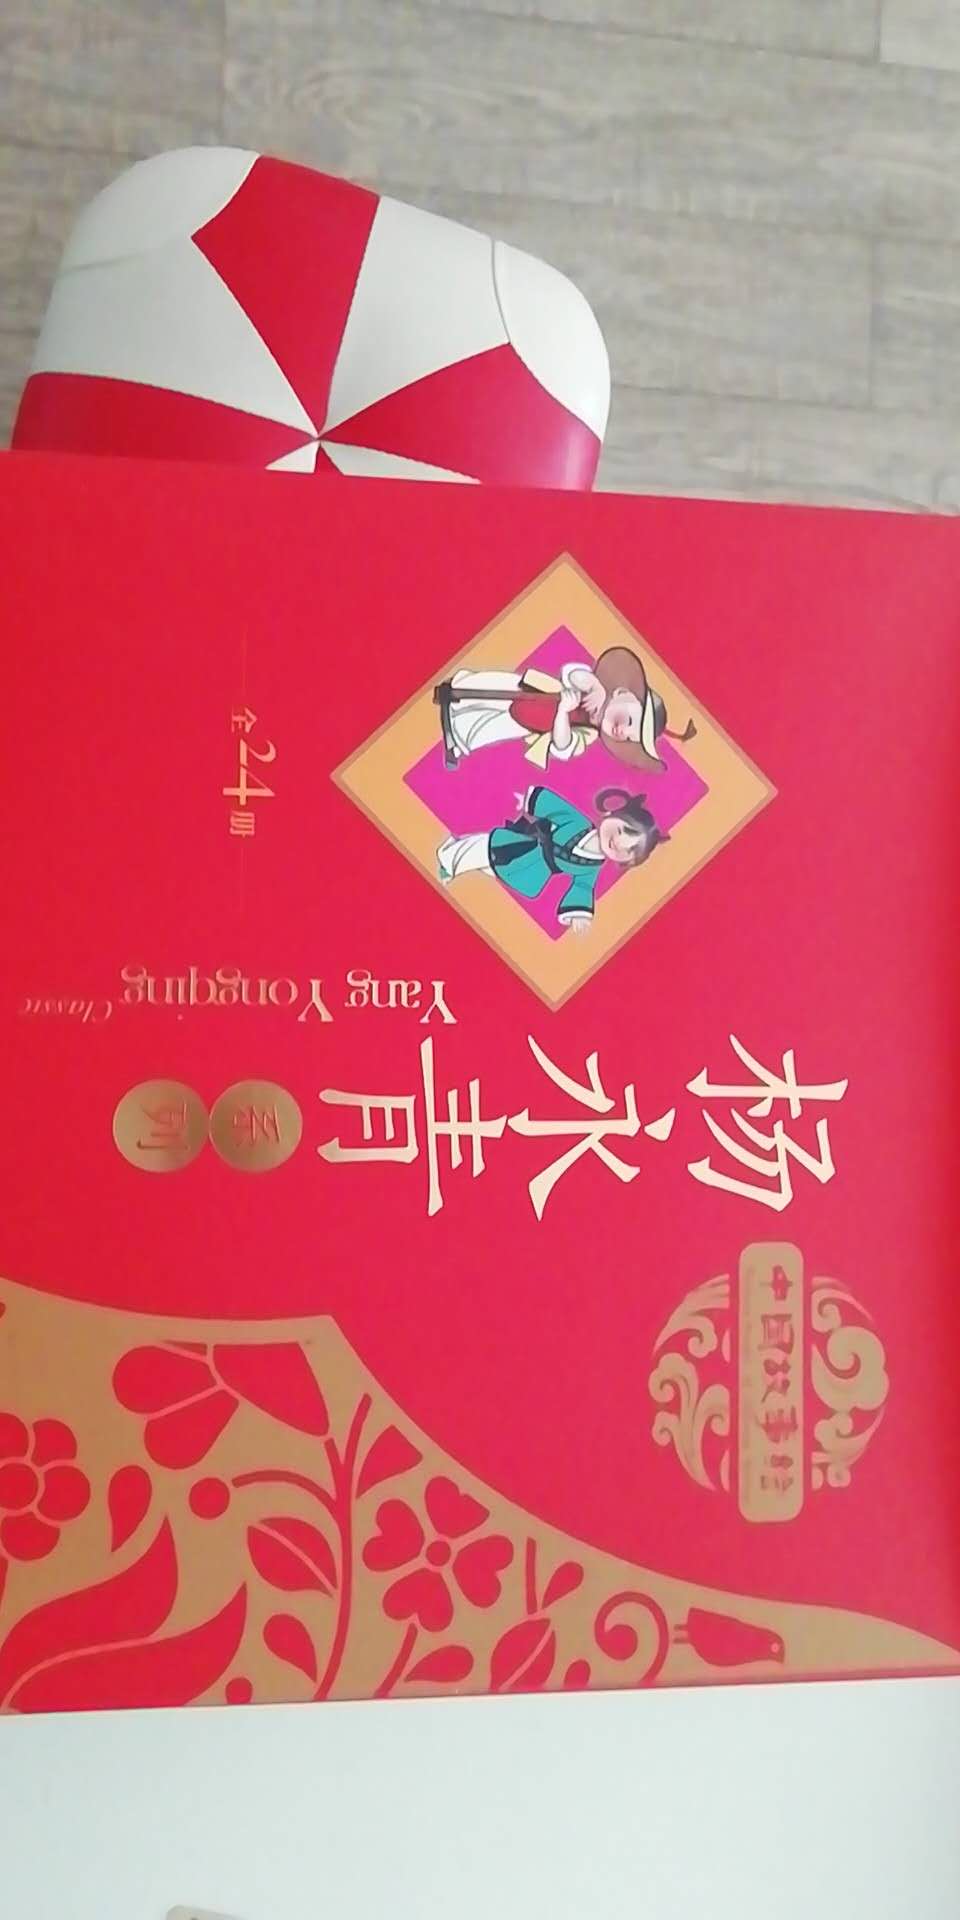 不错，孩子更应该多看一些中国的经典故事。了解中国文化